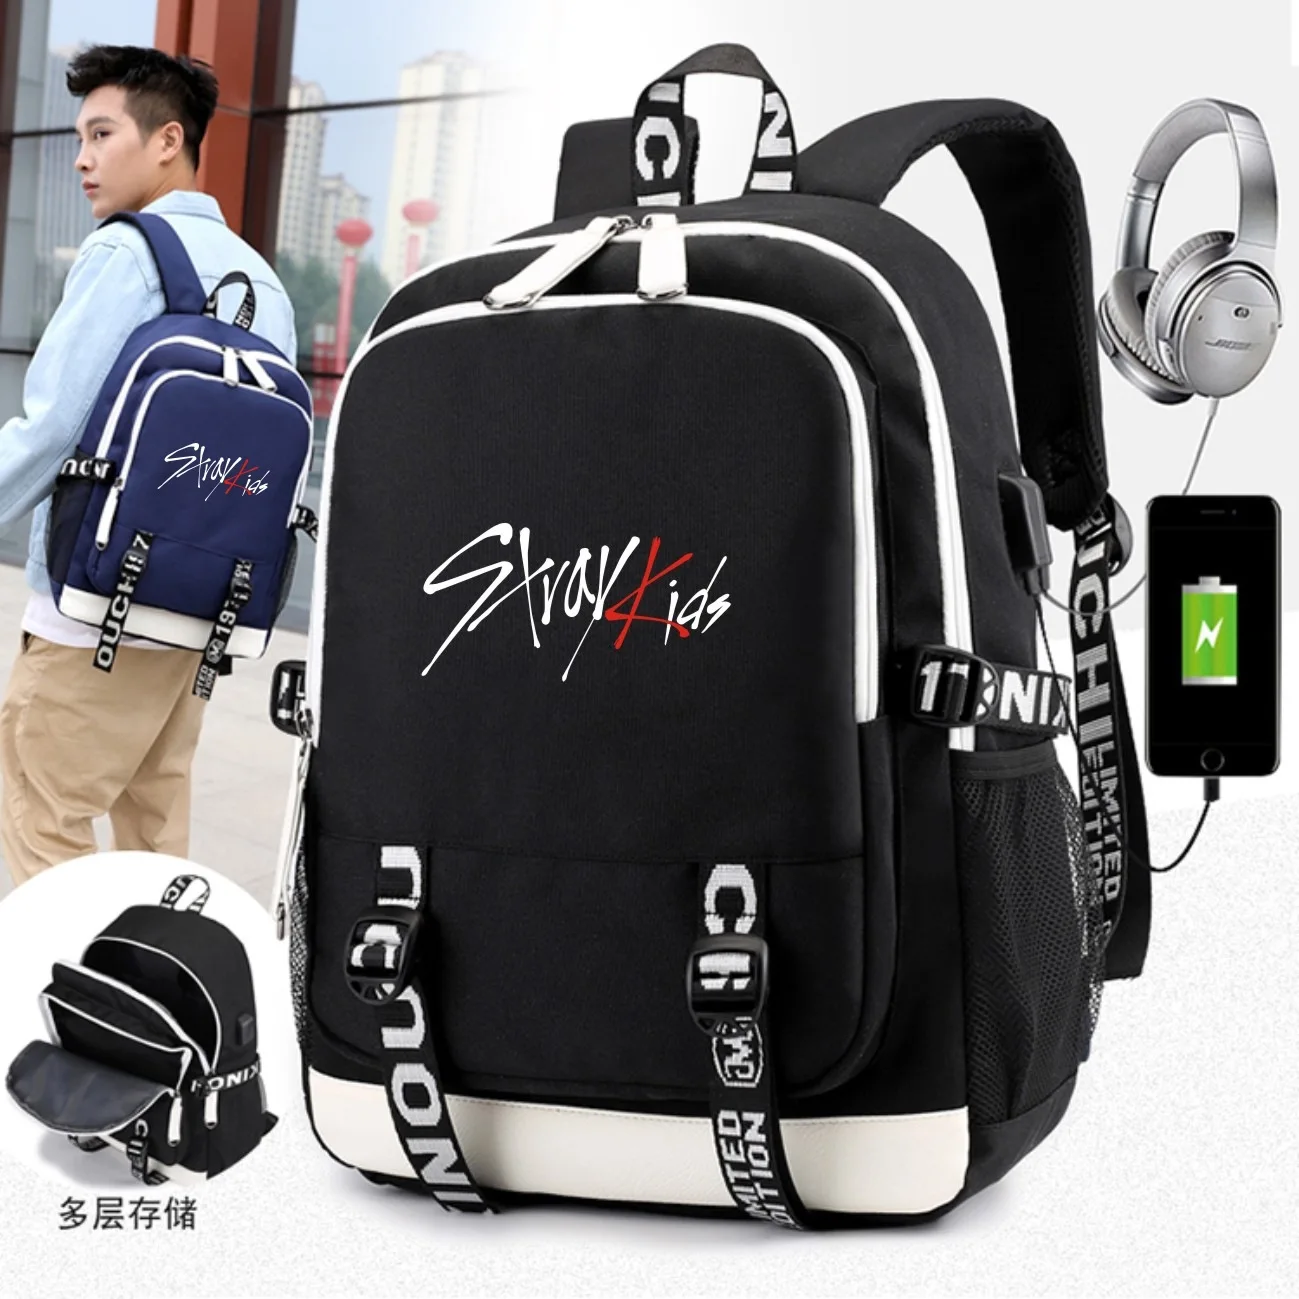 Модный Kpop рюкзак высокого качества Многофункциональный USB наушники с зарядным устройством Джек рюкзак большой емкости Kpop школьный